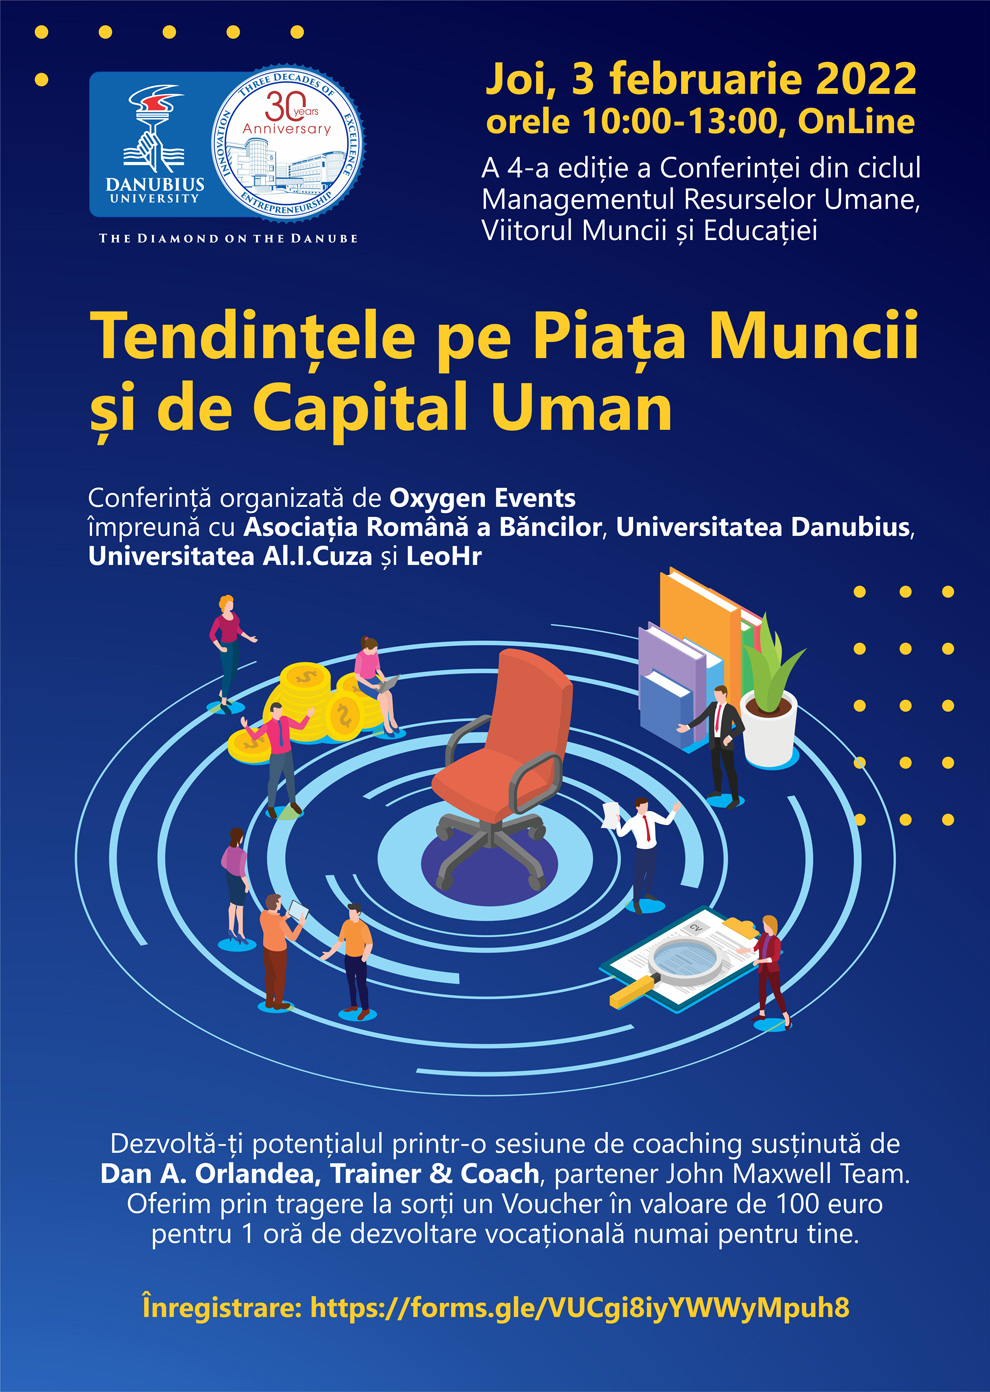 Ediția a 4-a a Conferinței Managementul Resurselor Umane, Viitorul Muncii și Educației 